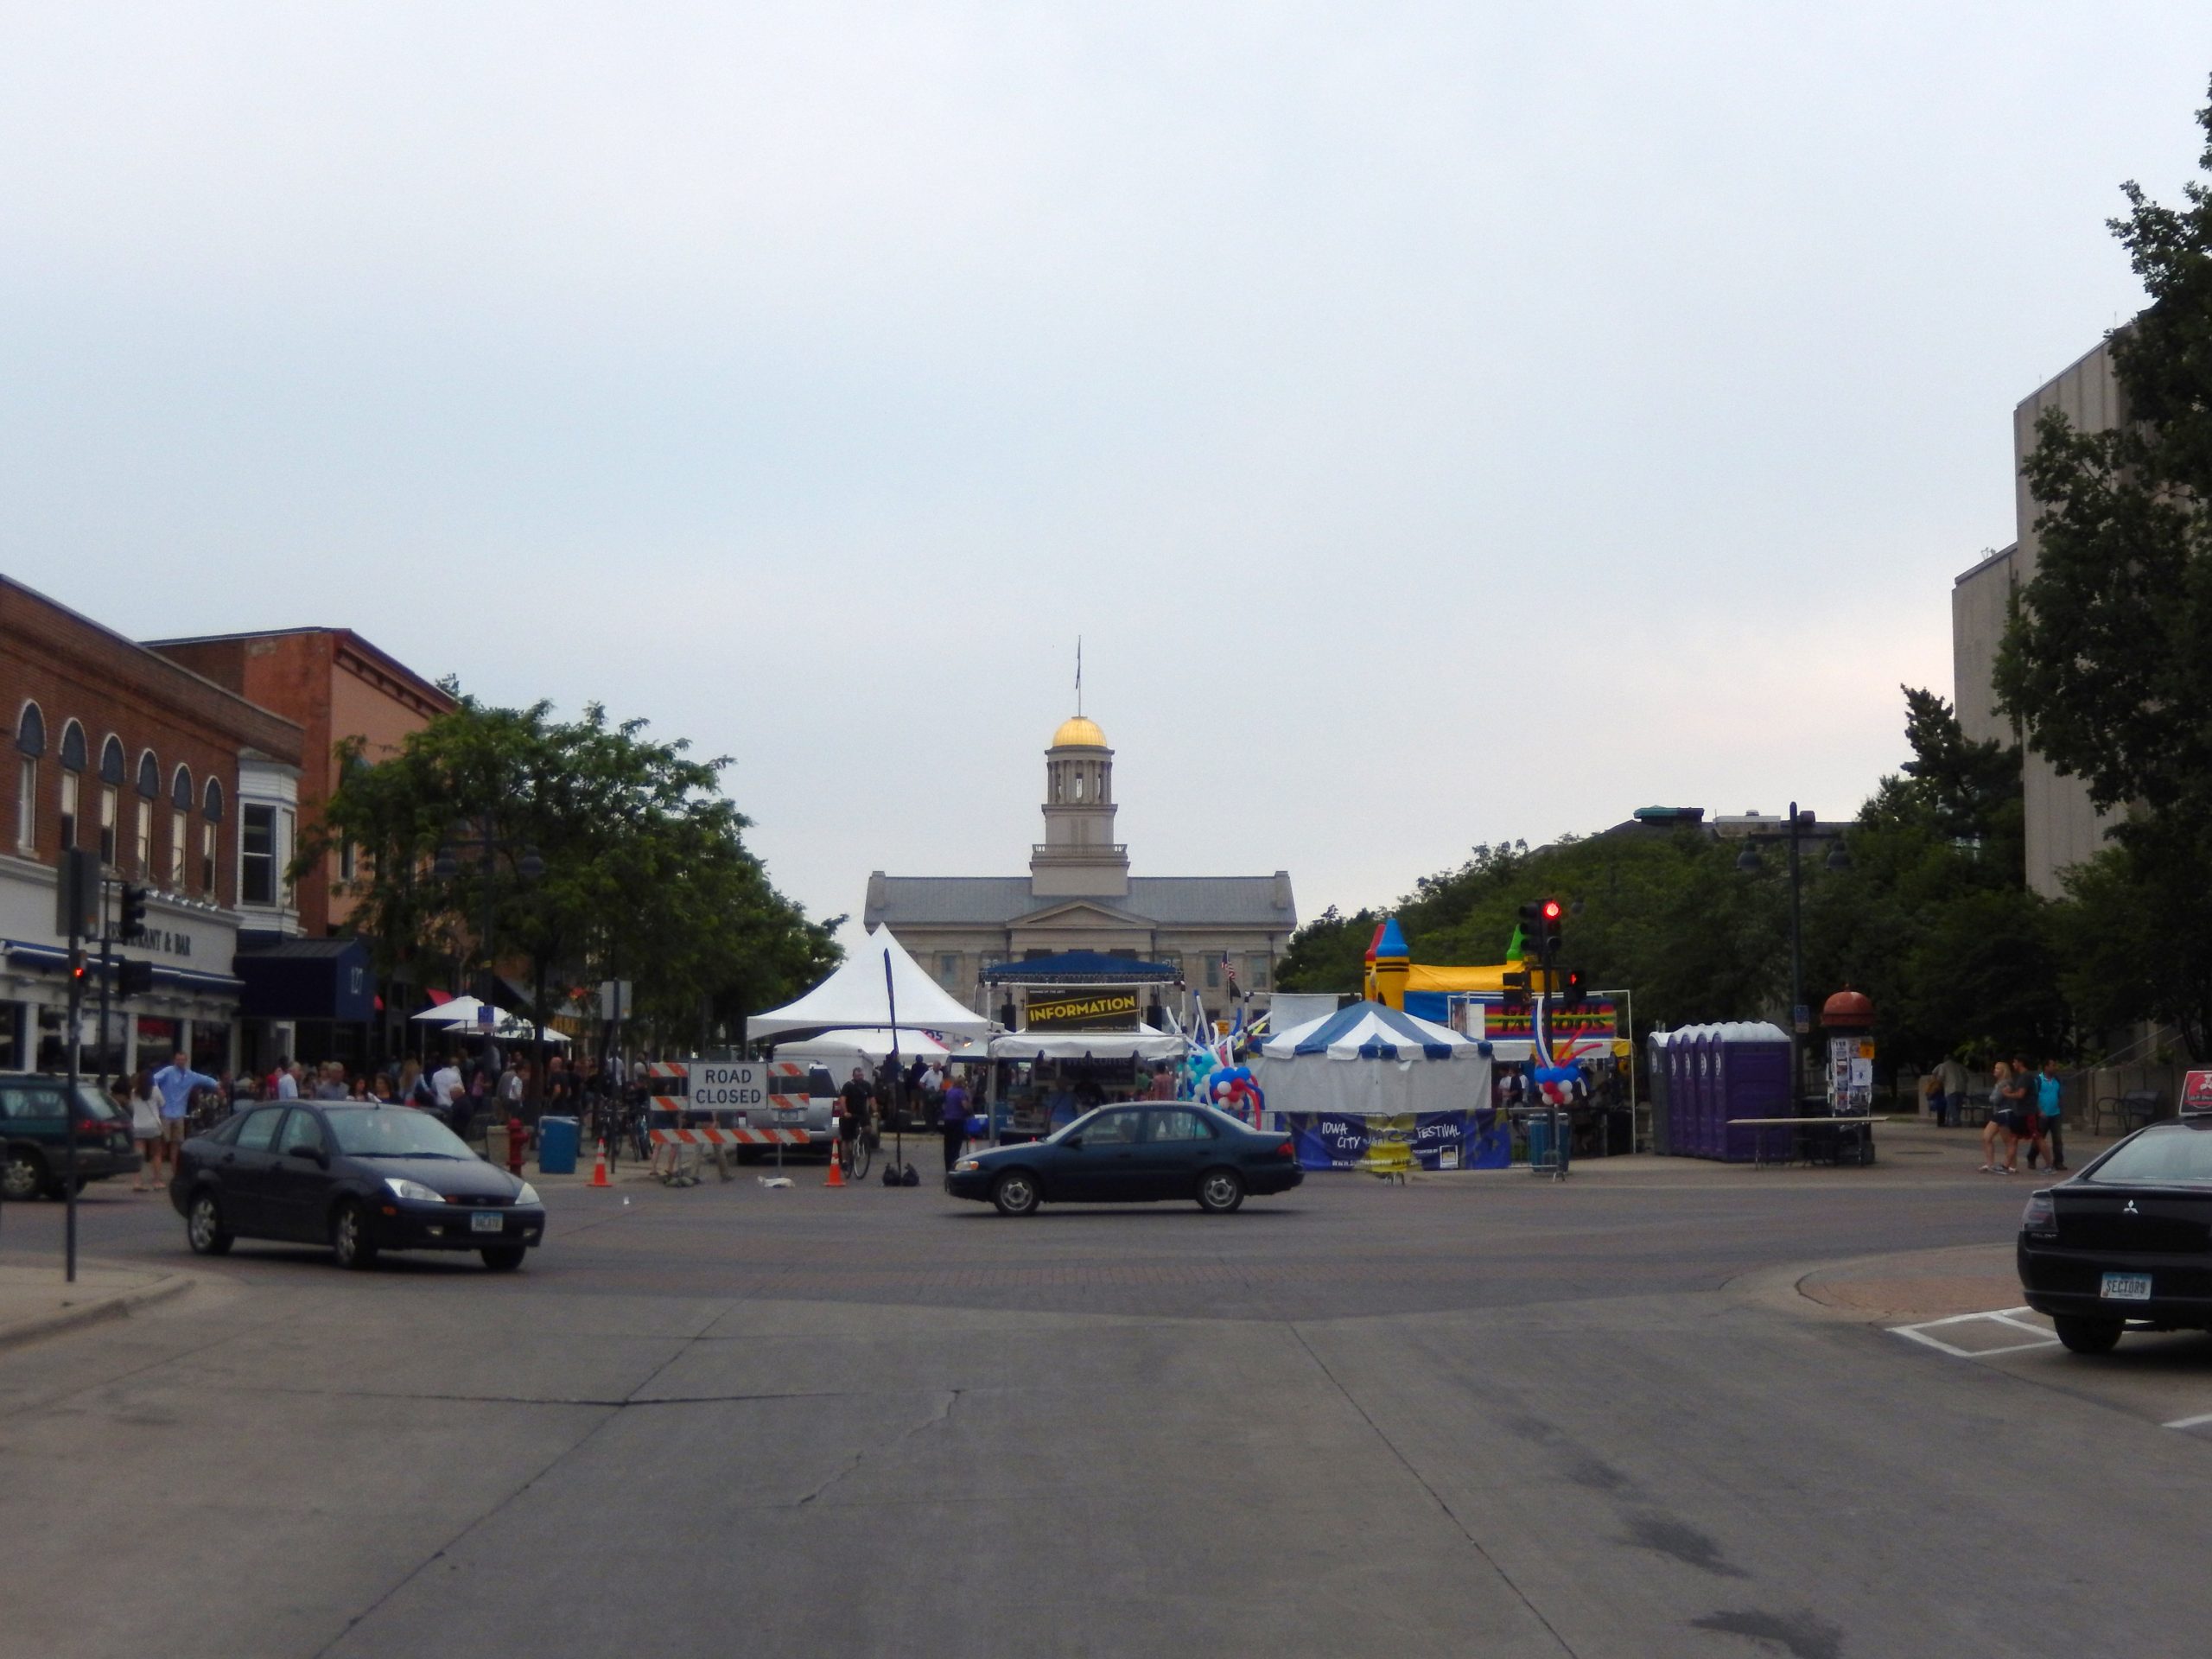 View of the Iowa City Jazz Fest 2015